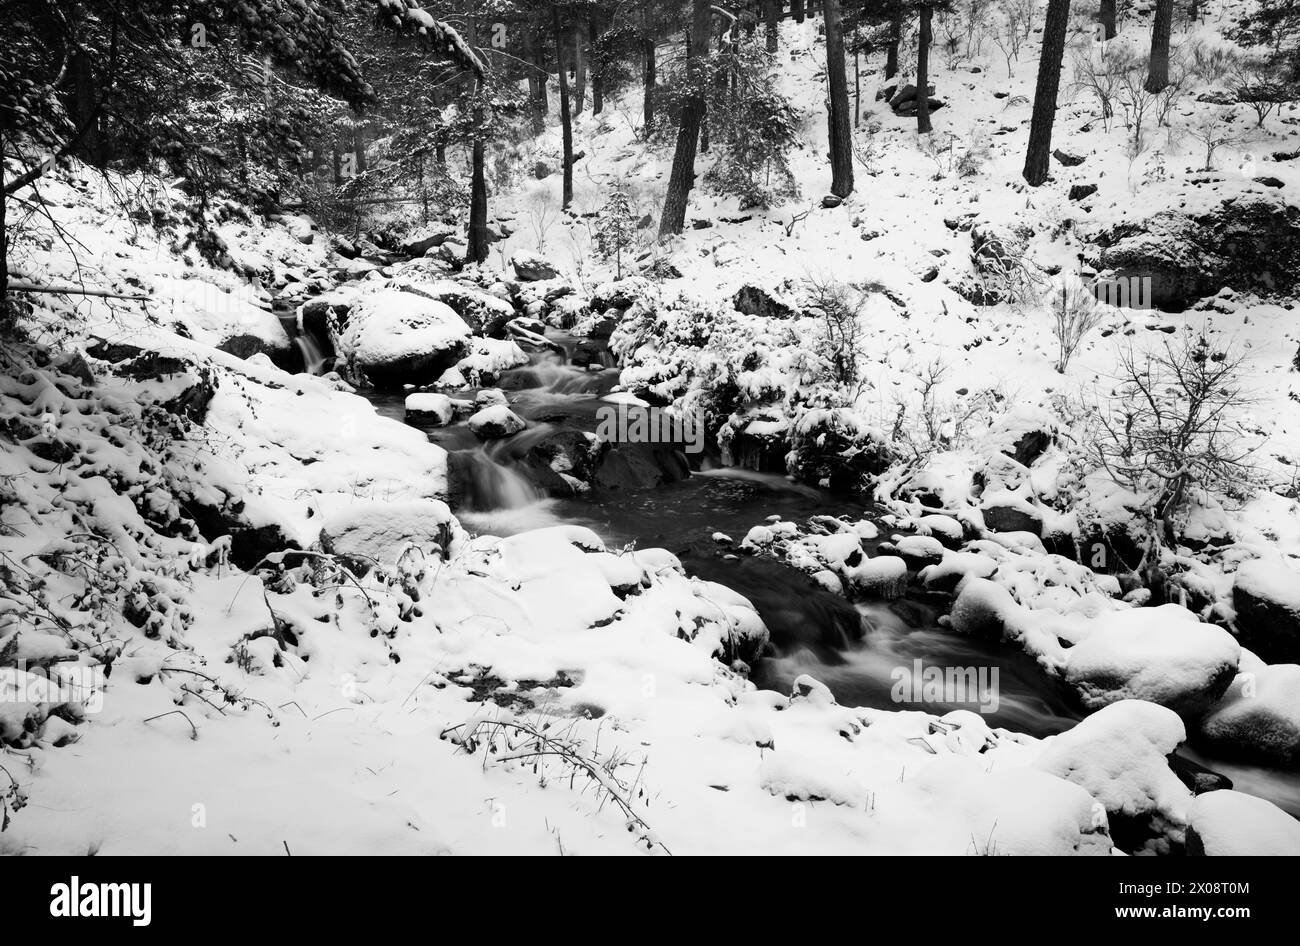 Paisible paysage fluvial noir et blanc situé dans une région montagneuse enneigée pendant l'hiver, mettant en vedette un flux d'eau au milieu de grands rochers. Banque D'Images